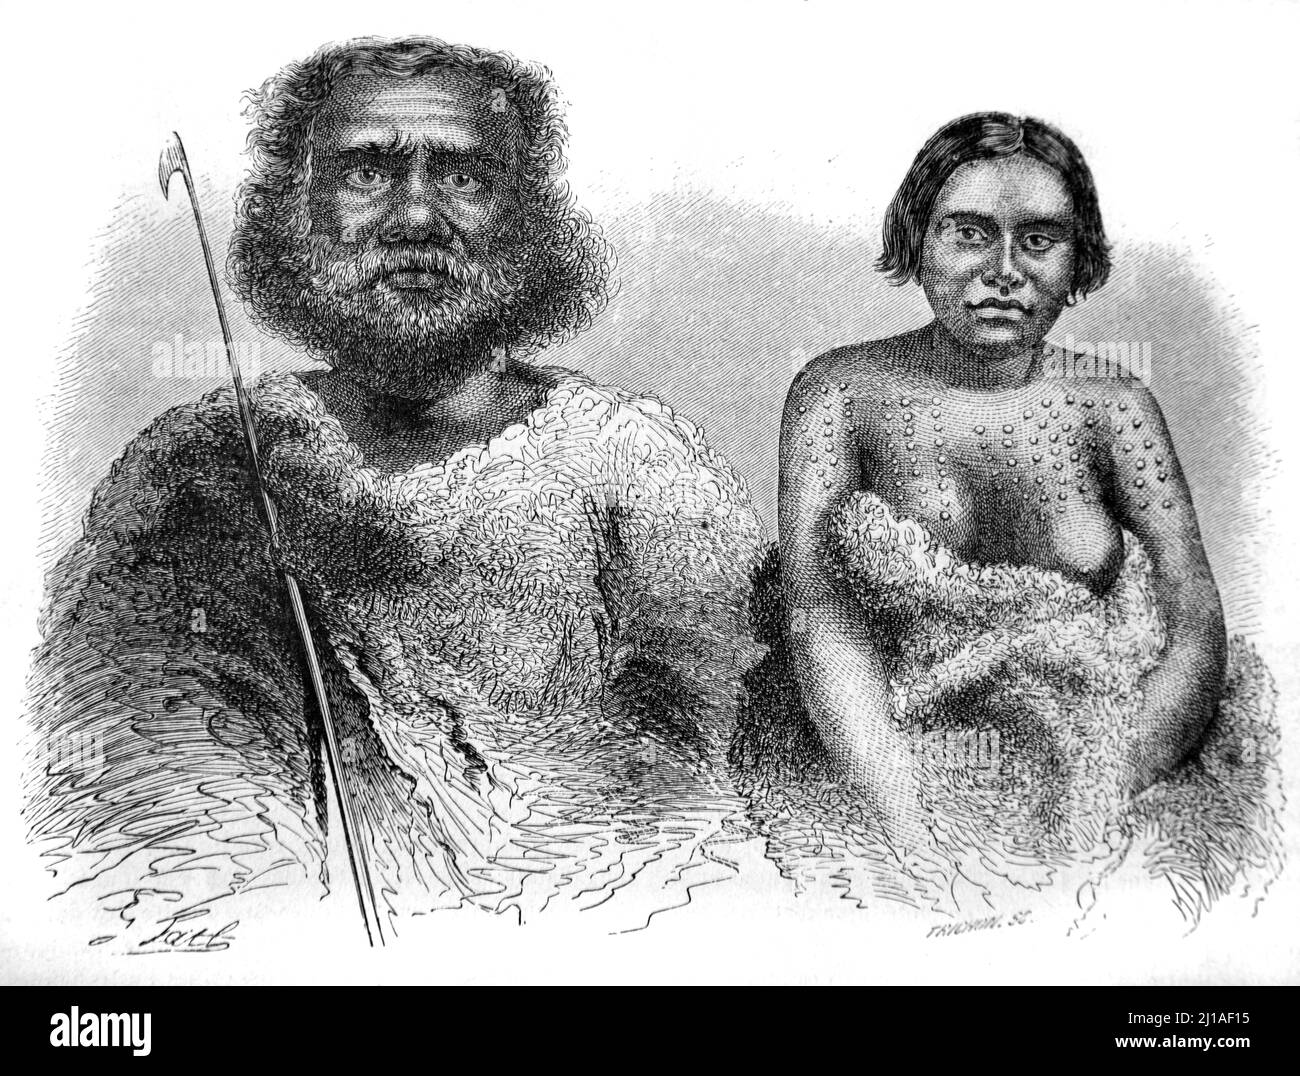 Ritratto di aborigeni, coppie, indigeni o aborigeni in Australia. Illustrazione o incisione 1860. Foto Stock